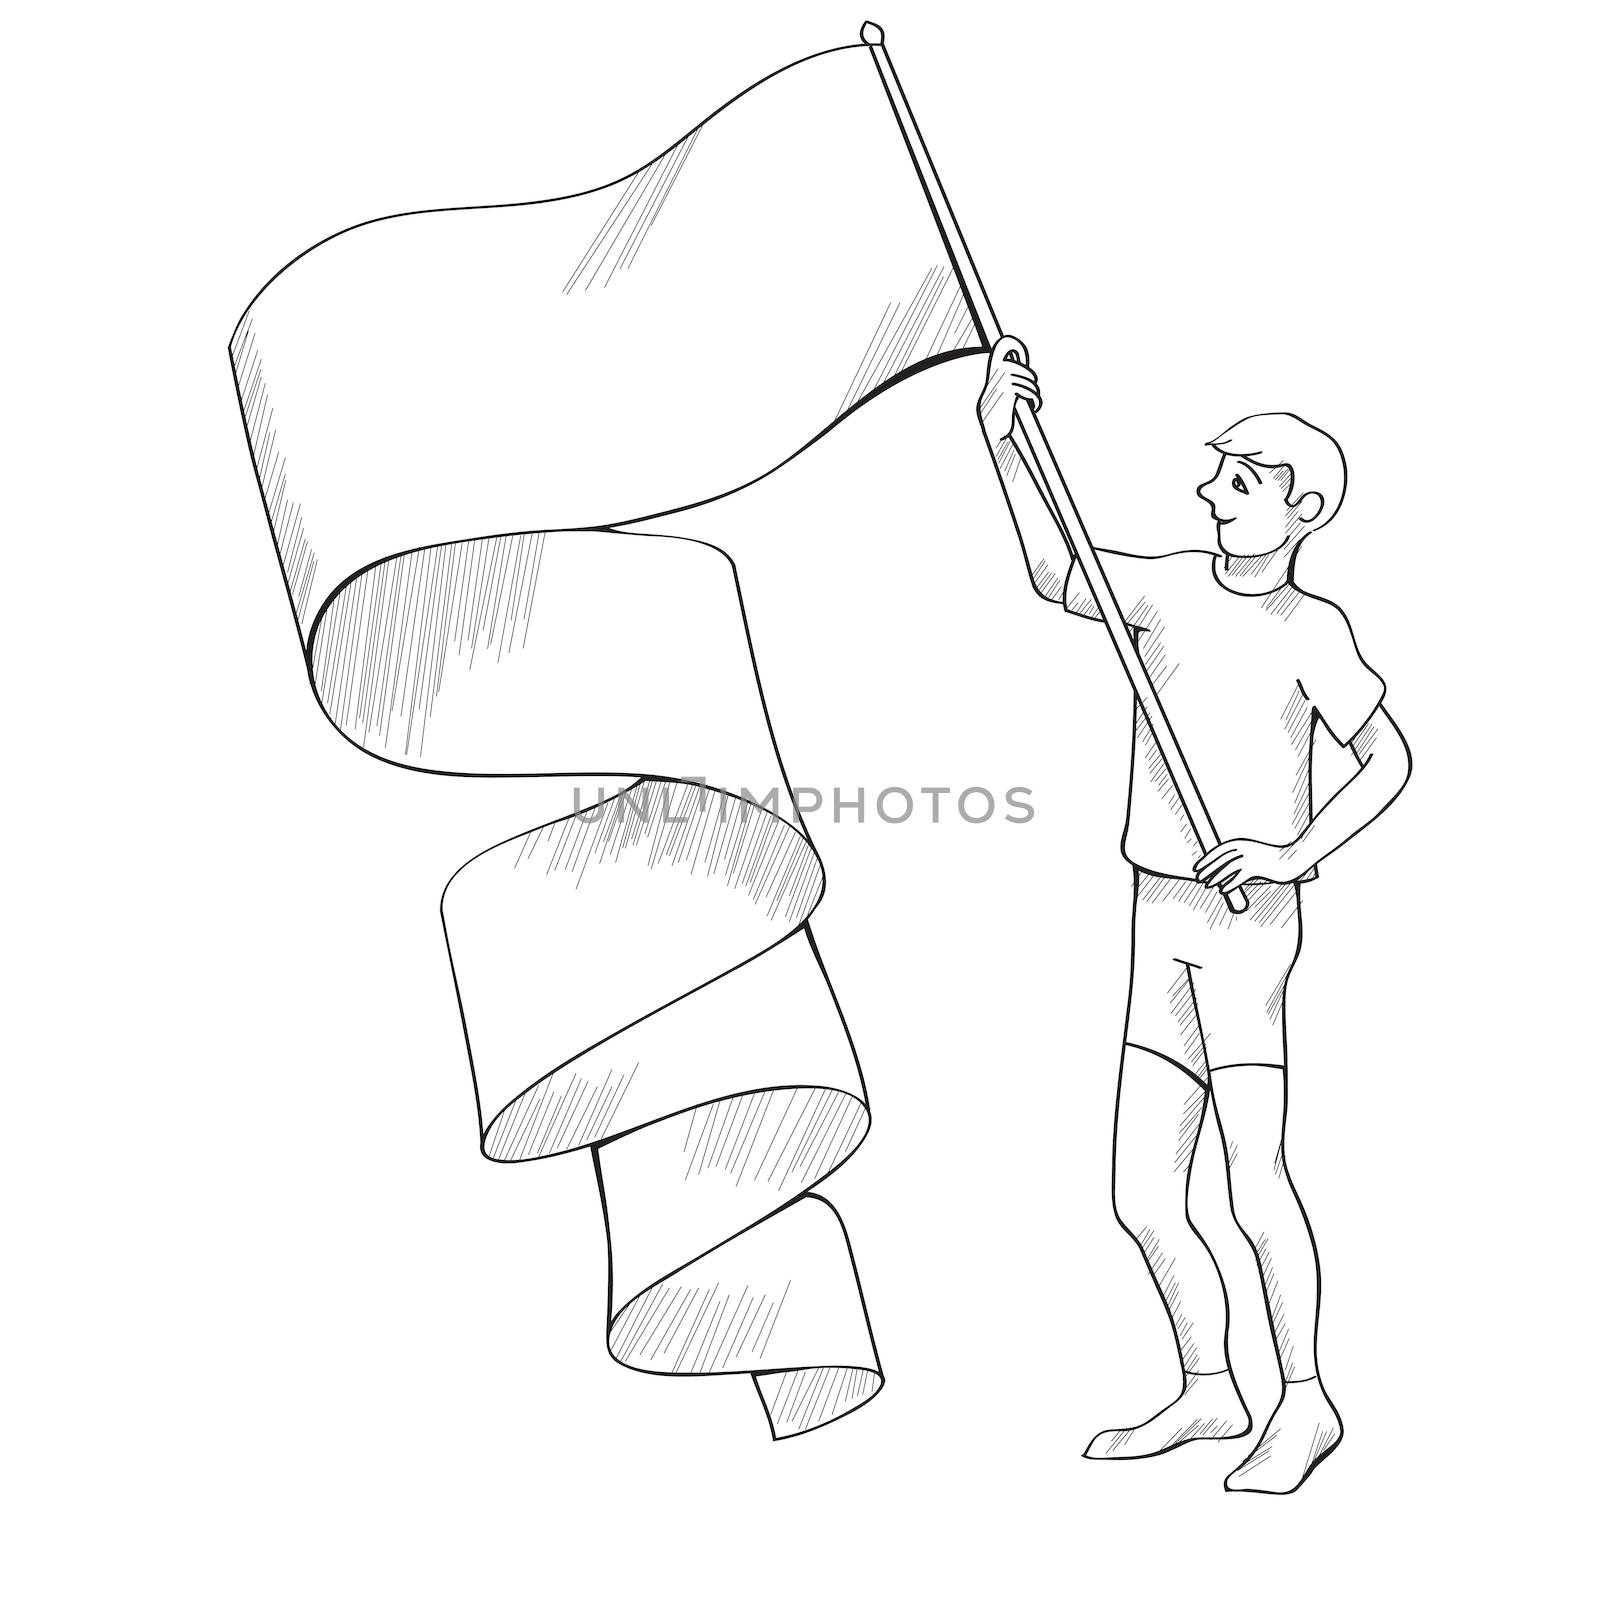 Flag bearer hand drawn cartoon illustration over white